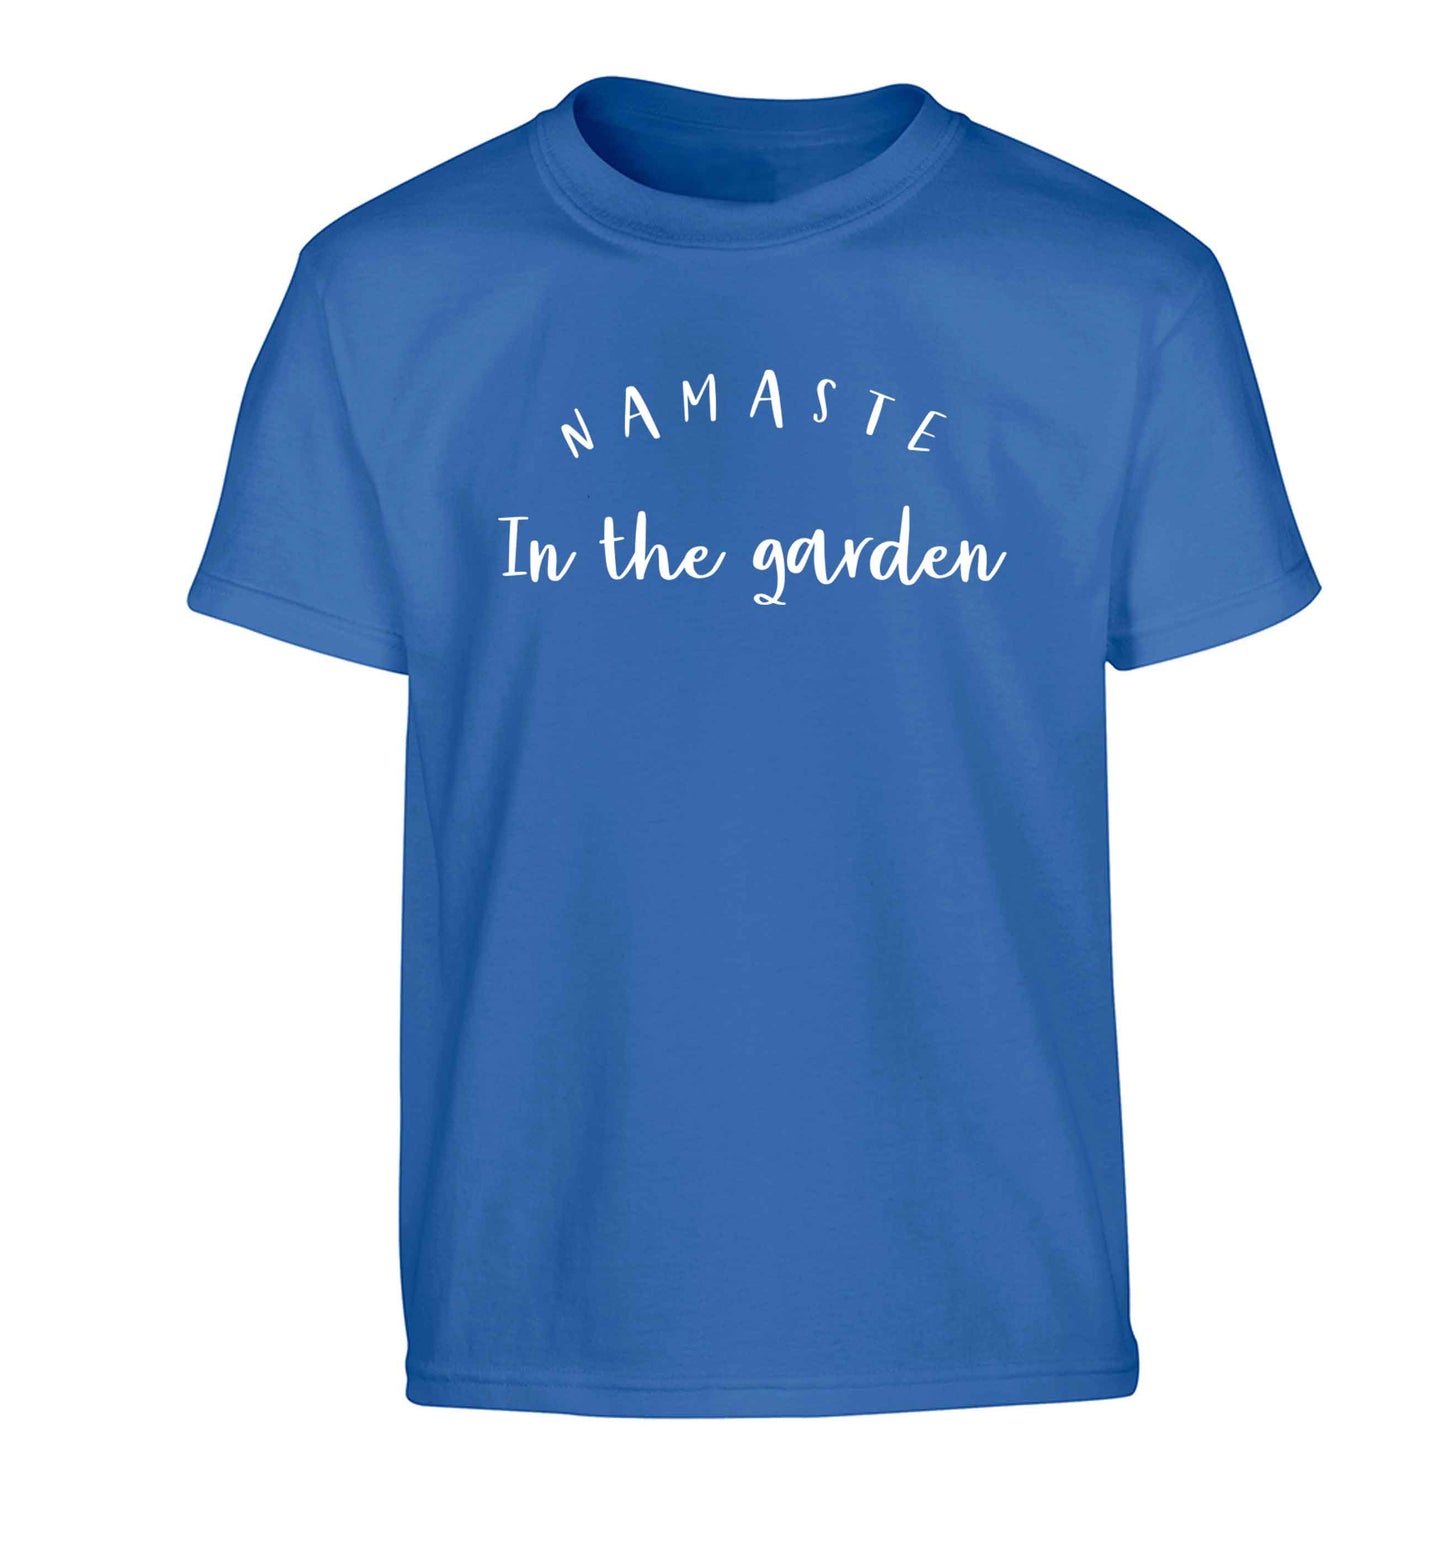 Namaste in the garden Children's blue Tshirt 12-13 Years